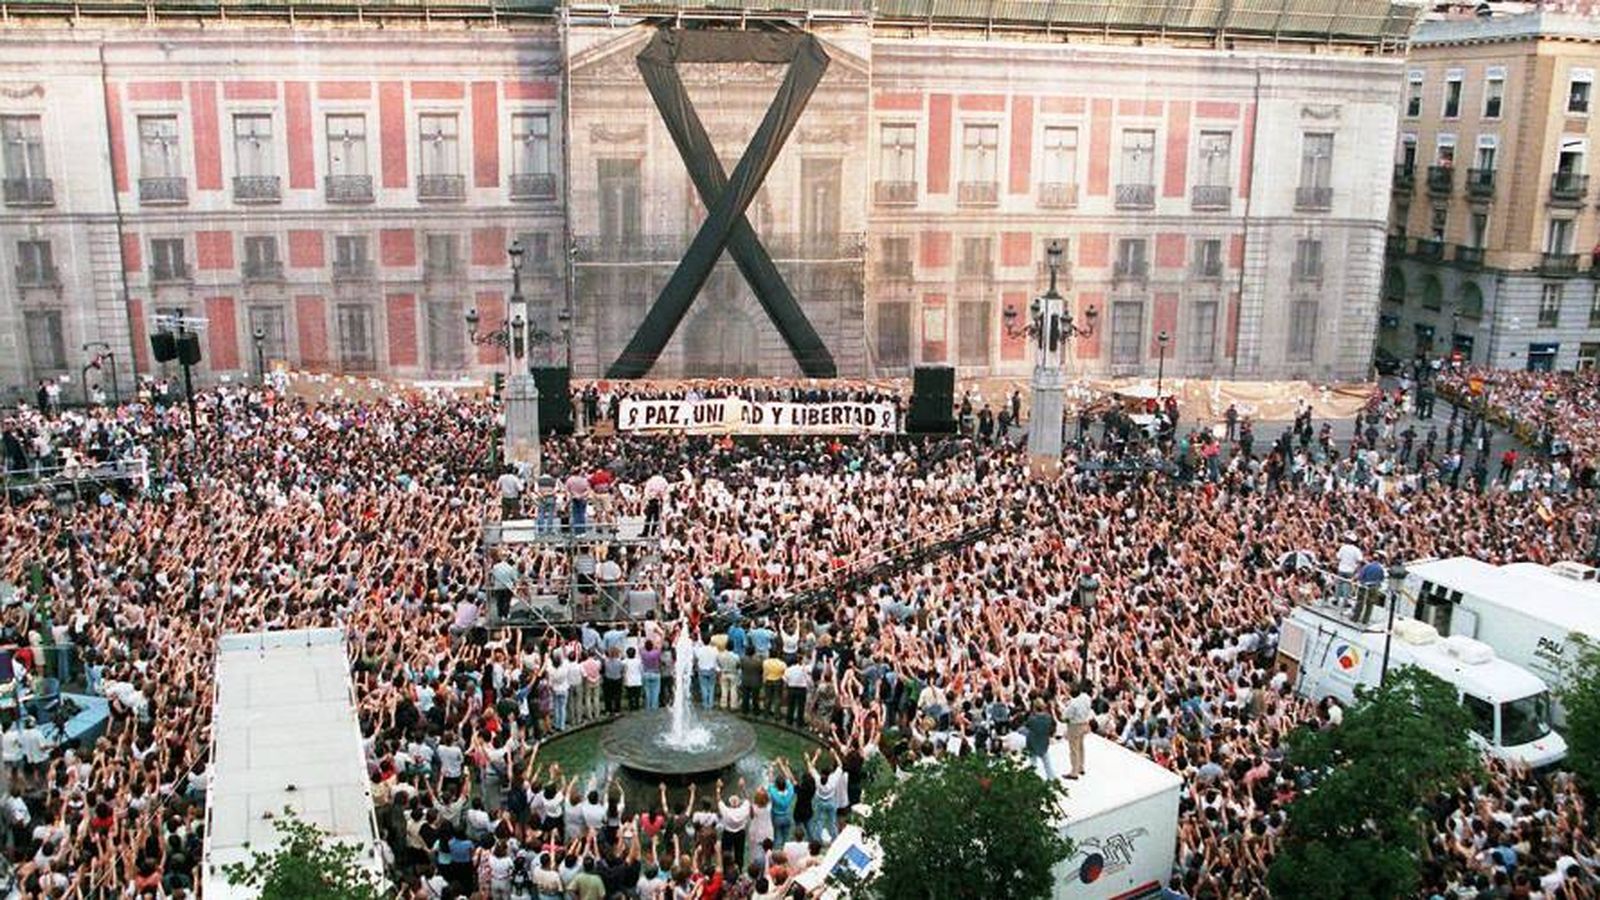 Foto: Imagen de la manifestación en Madrid en repulsa del asesinato de Blanco. (Fundación Miguel Ángel Blanco)